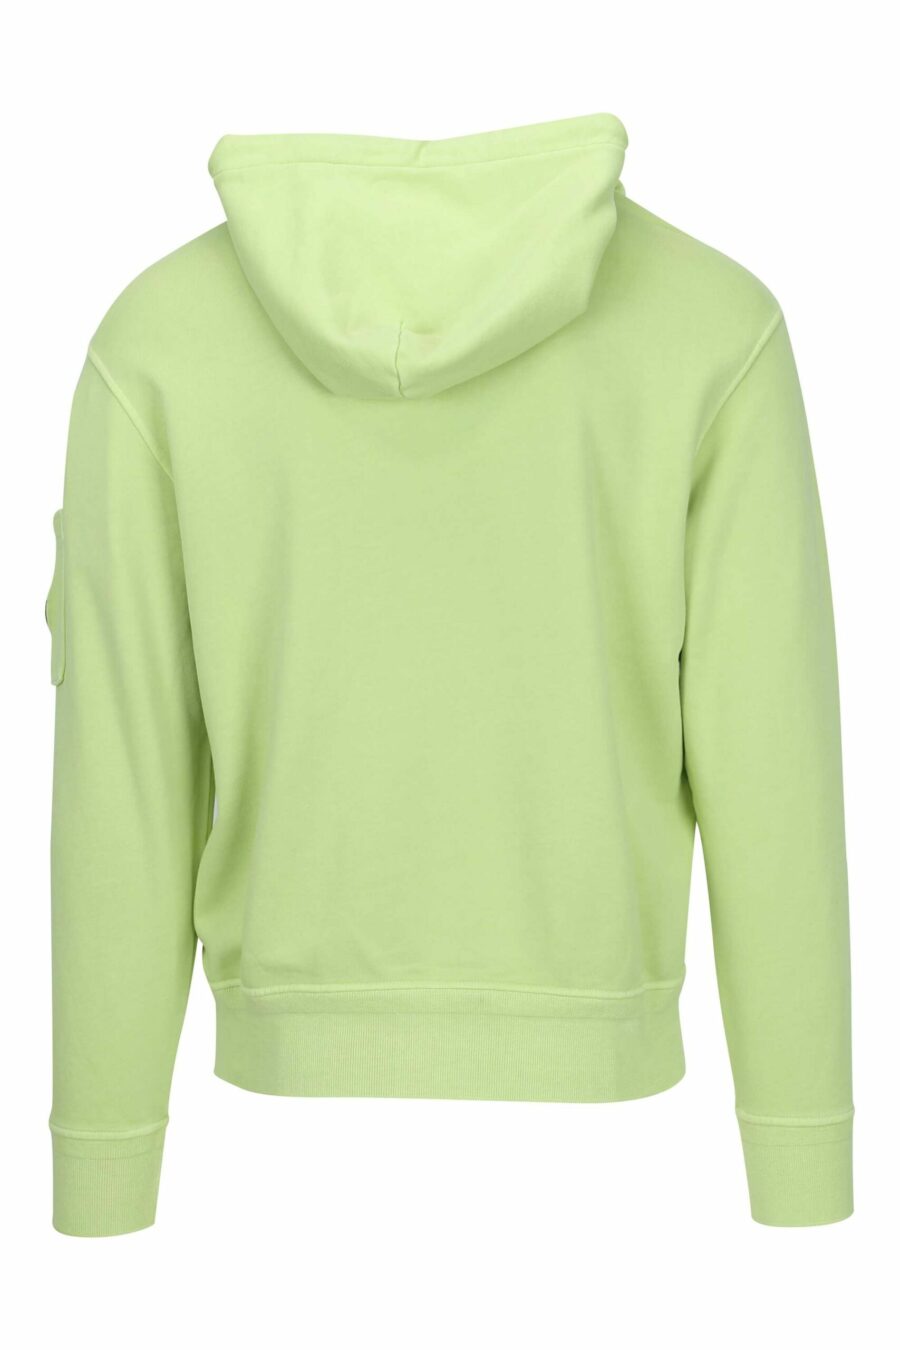 Sweat à capuche vert clair avec pochette pour lentille à logo miniature - 7620943677225 2 à l'échelle